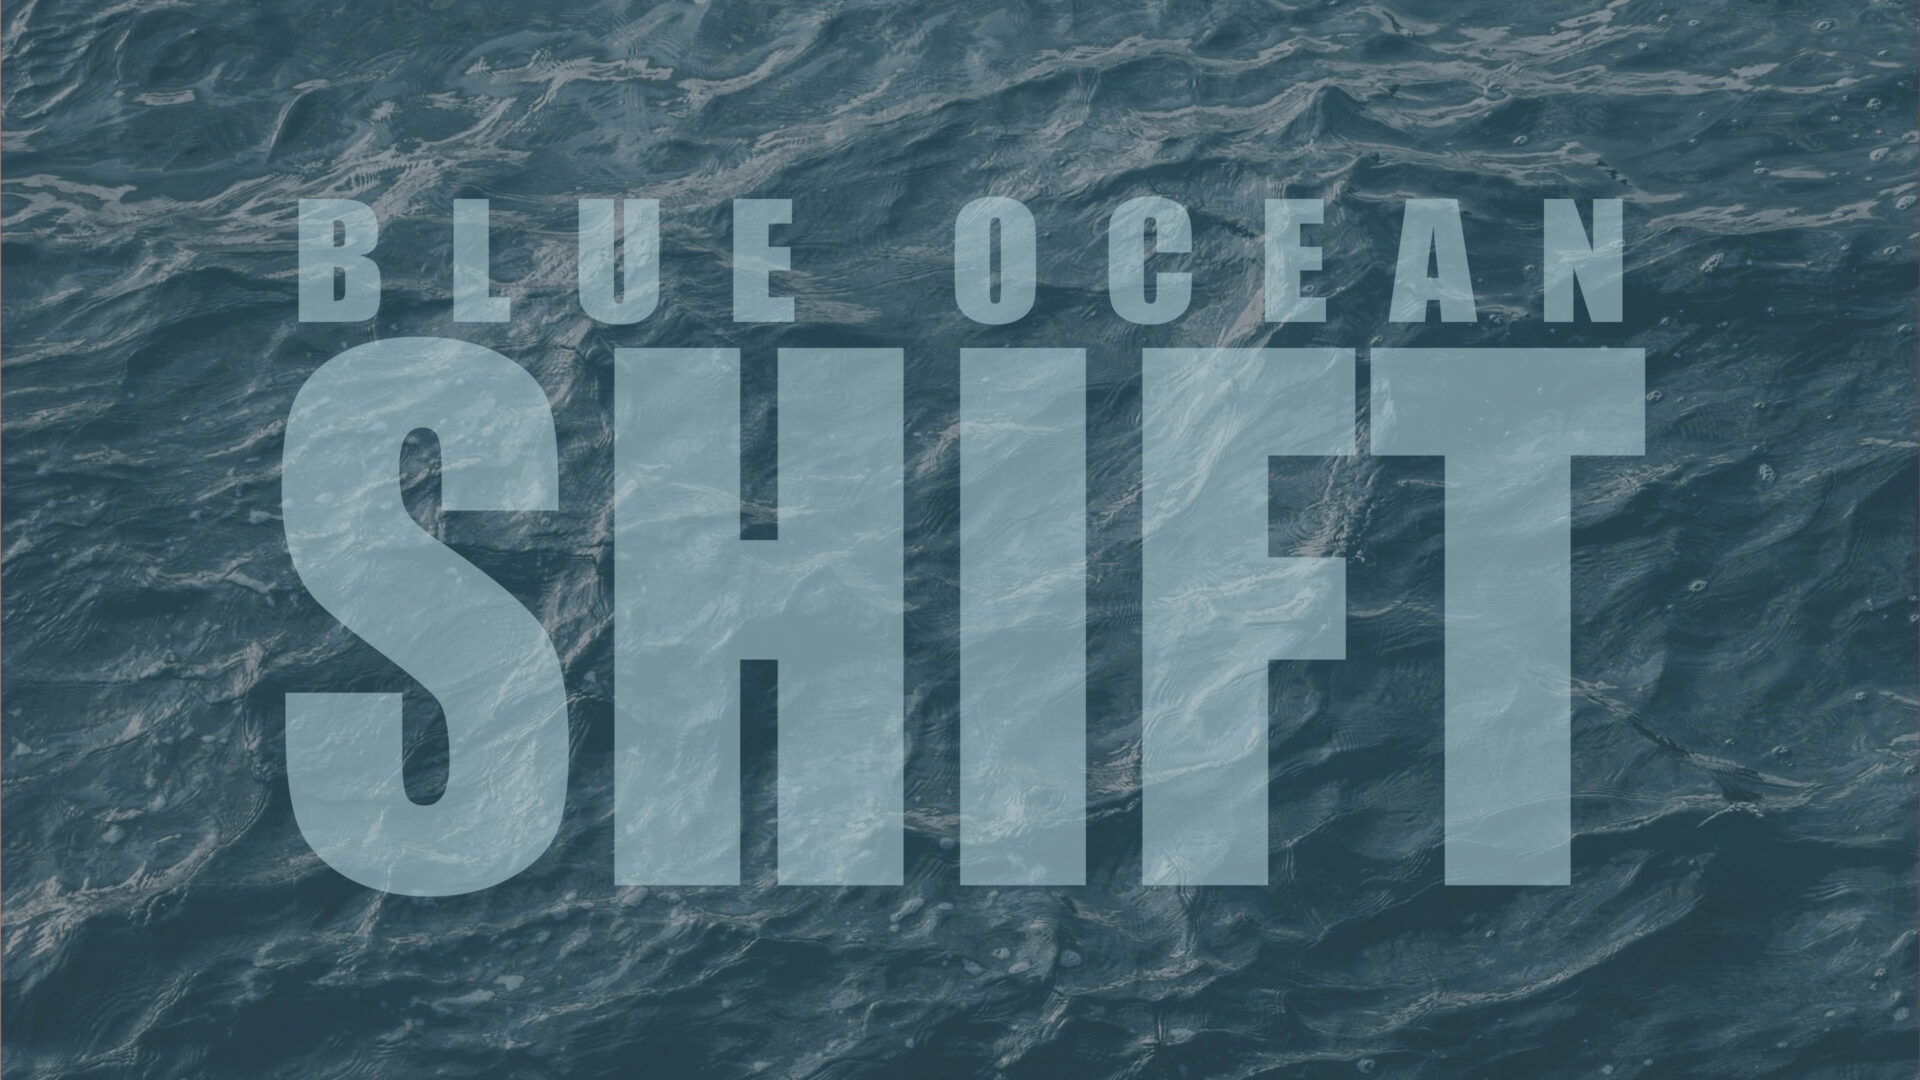 BLUE OCEAN SHIFT 16x9 cover v5